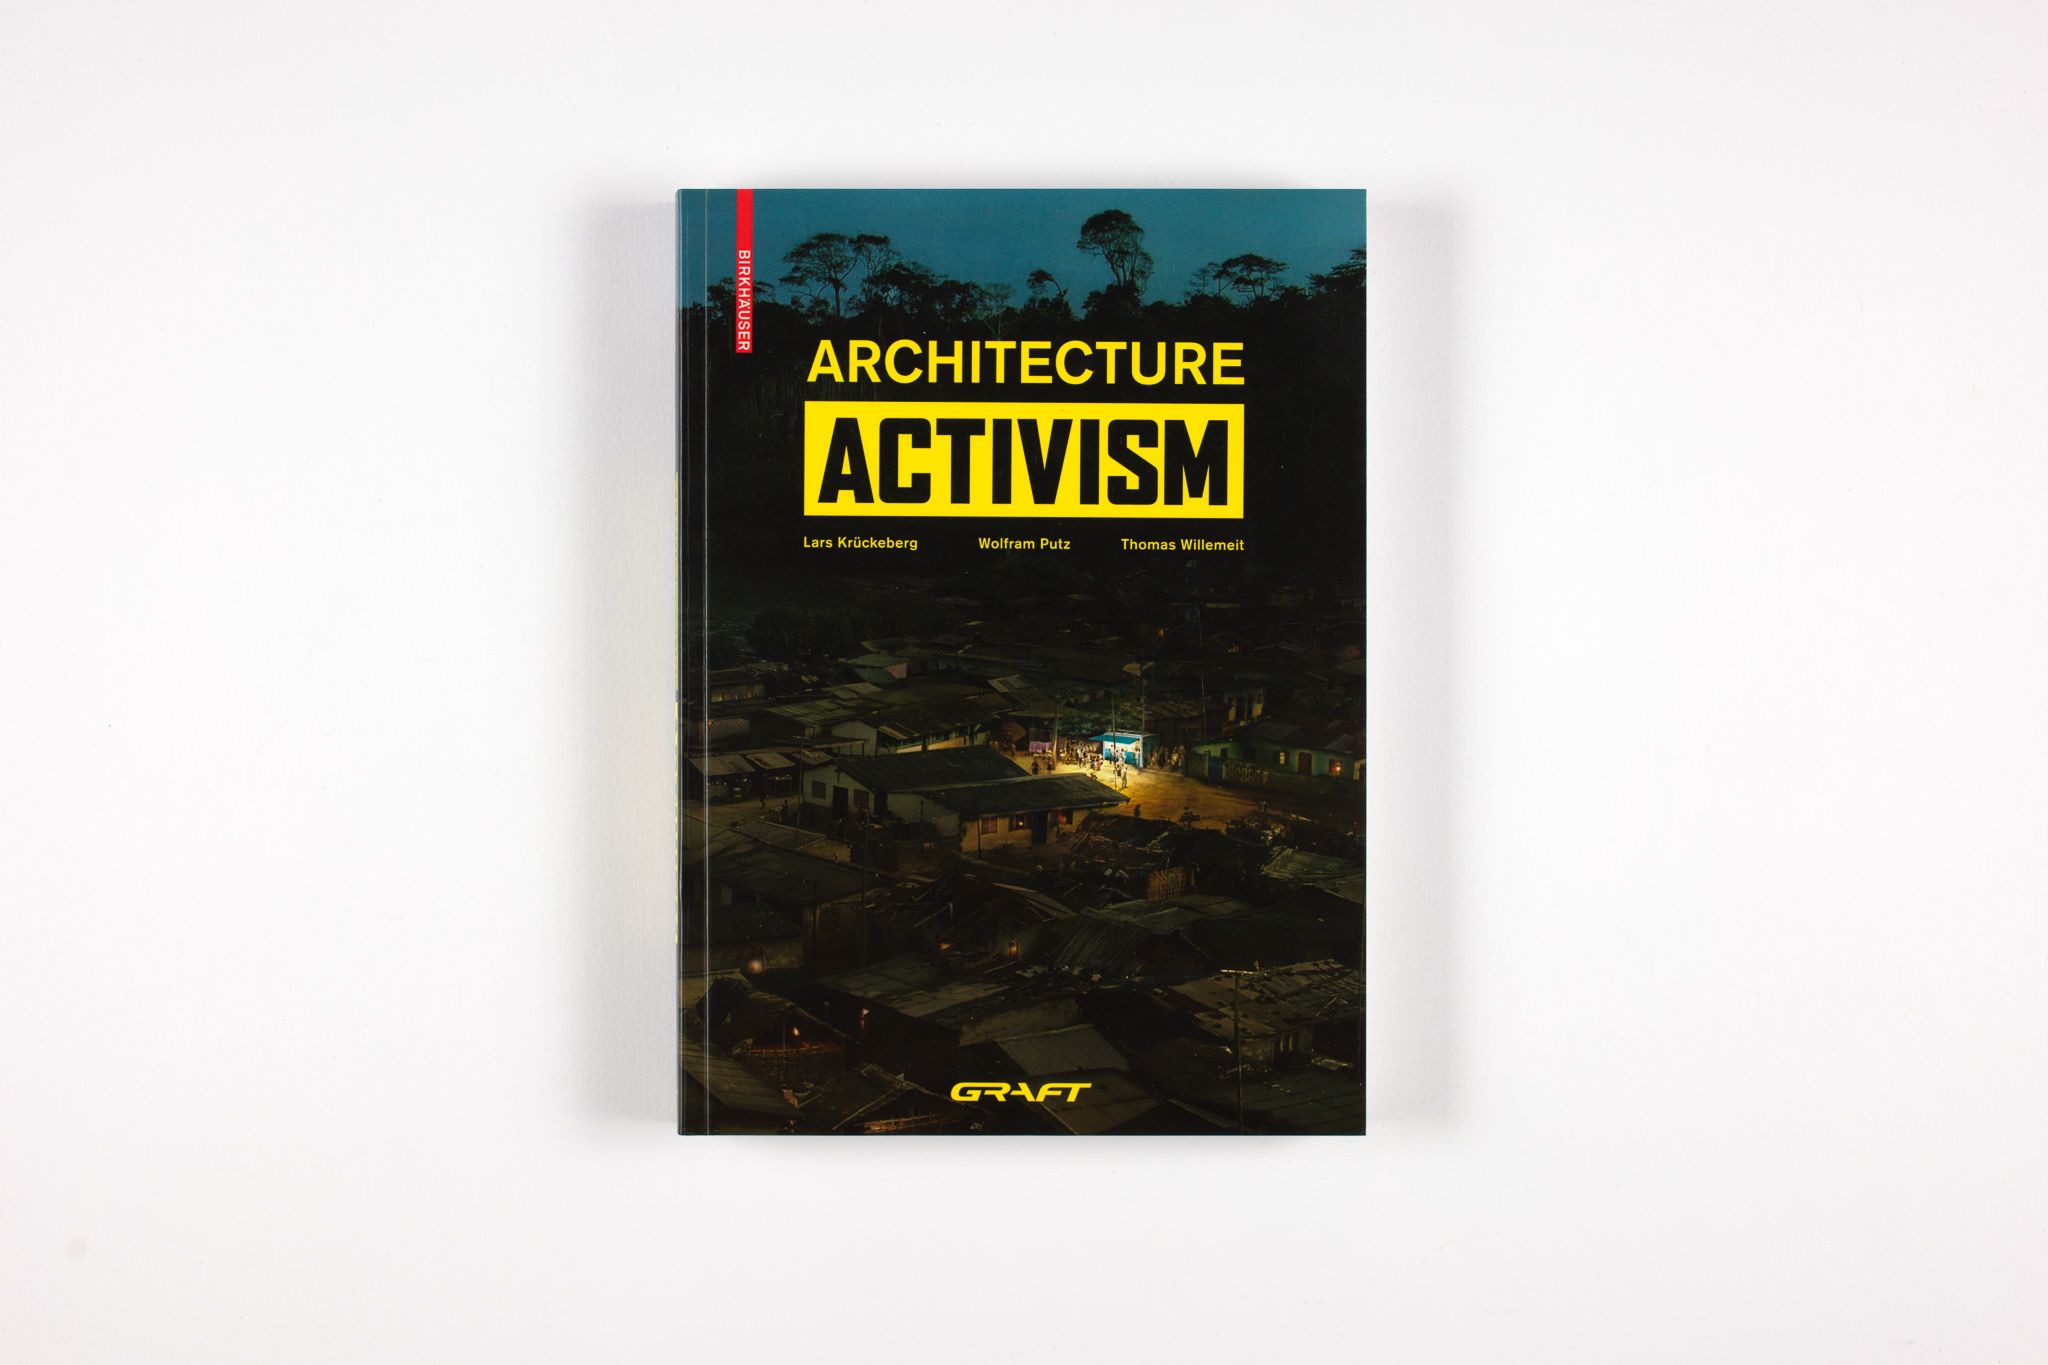 Architecture Activism